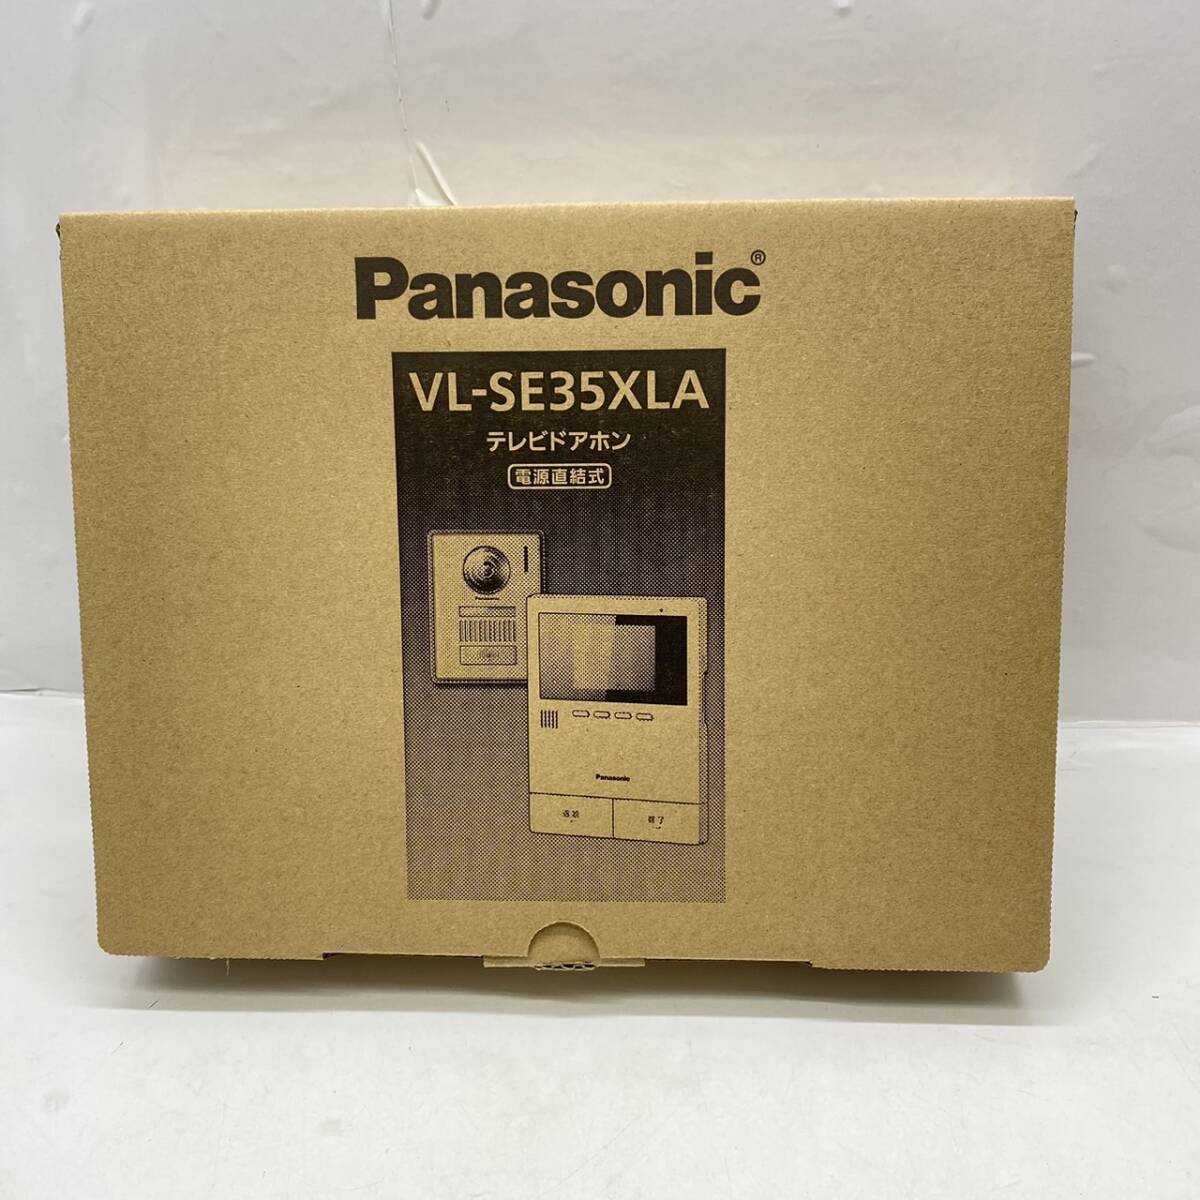 送料無料g30578 Panasonic パナソニック VL-SE35XLA テレビドアホン 電源直結 録画 録音機能付き 防犯 セキュリティ インターホン ドアホンの画像1